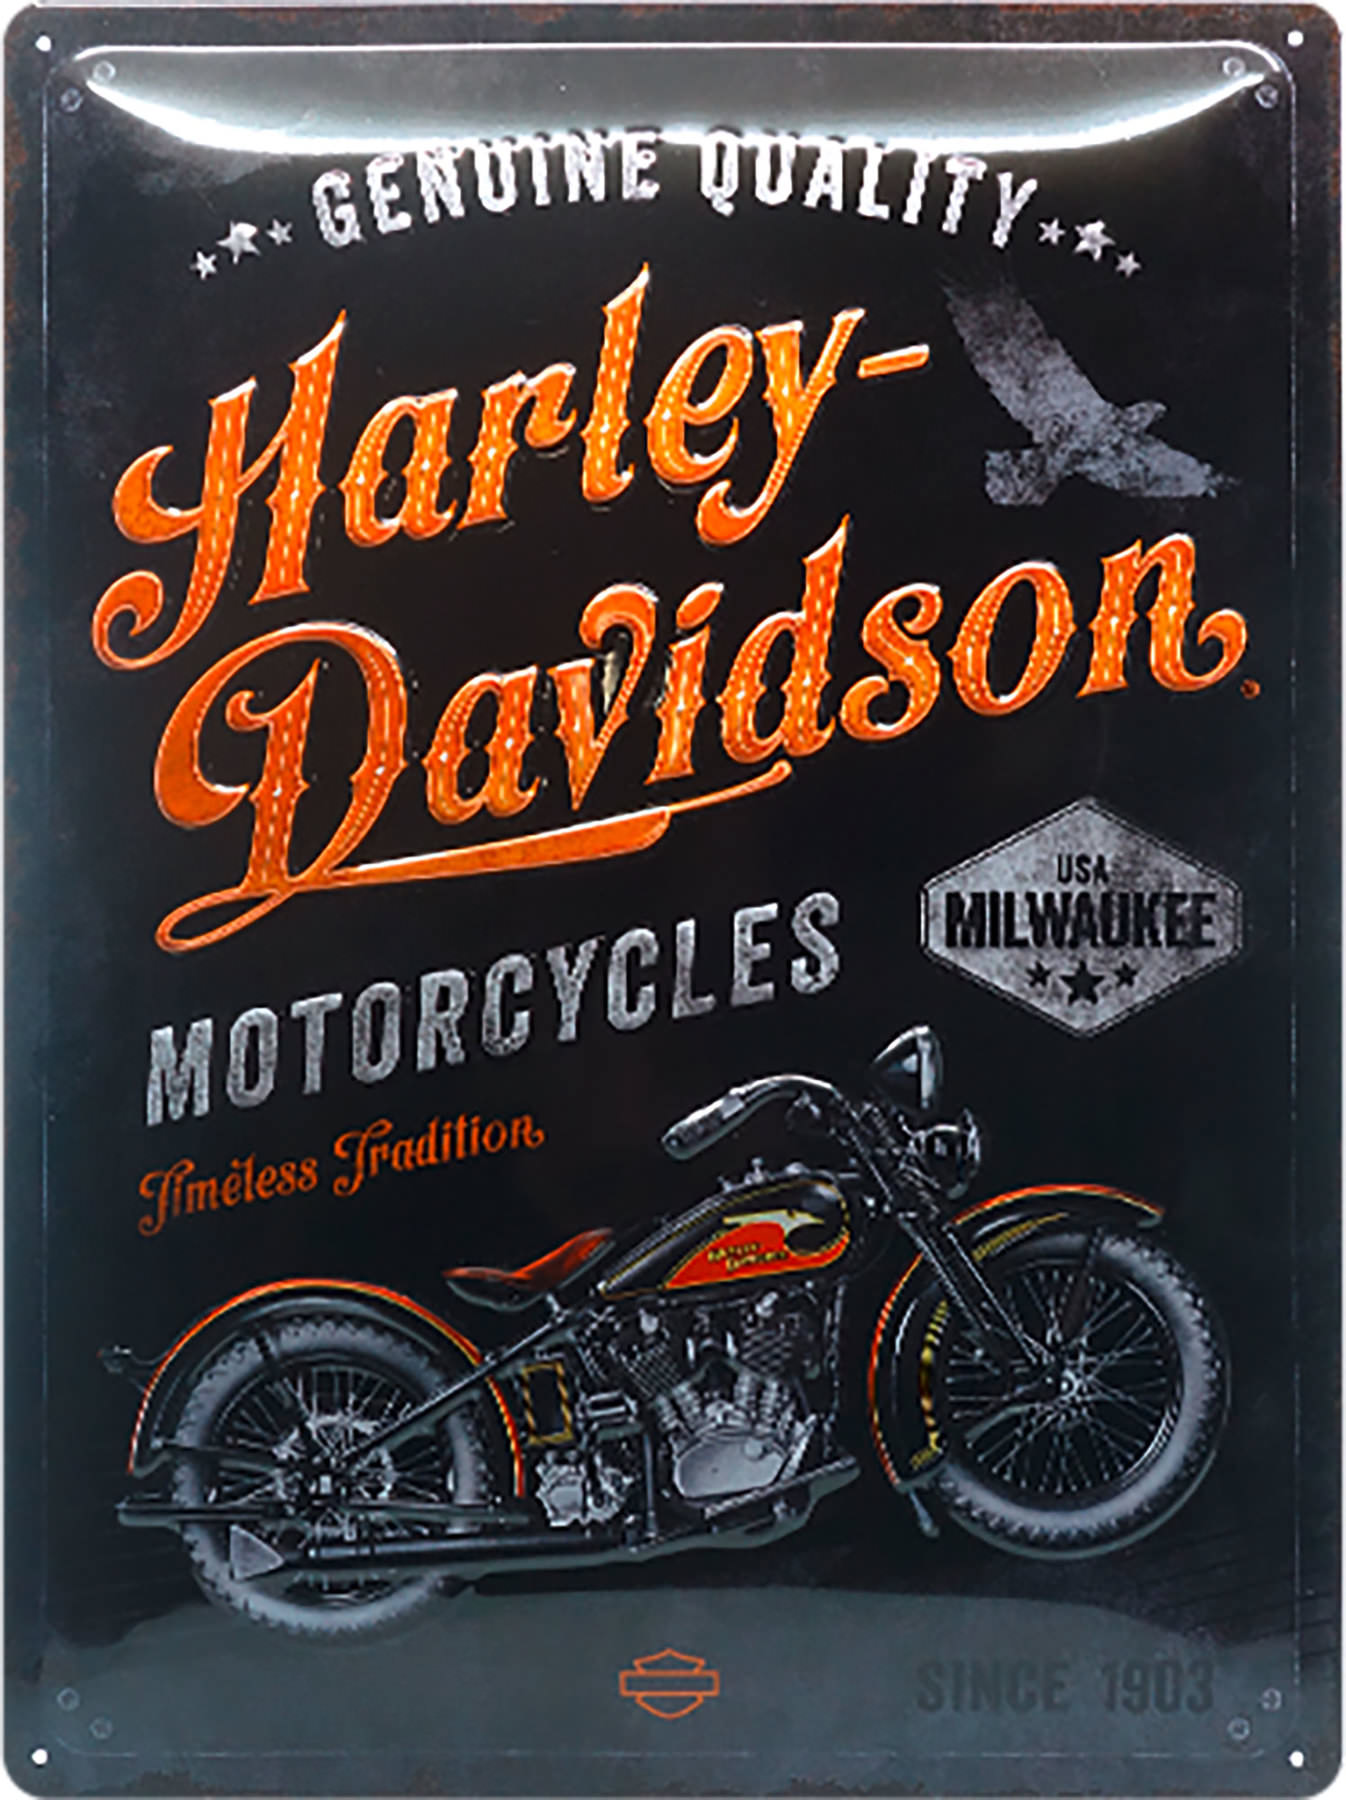 Harley Davidson tôle bouclier plaque métallique 40 cm Nostalgie Route 66 